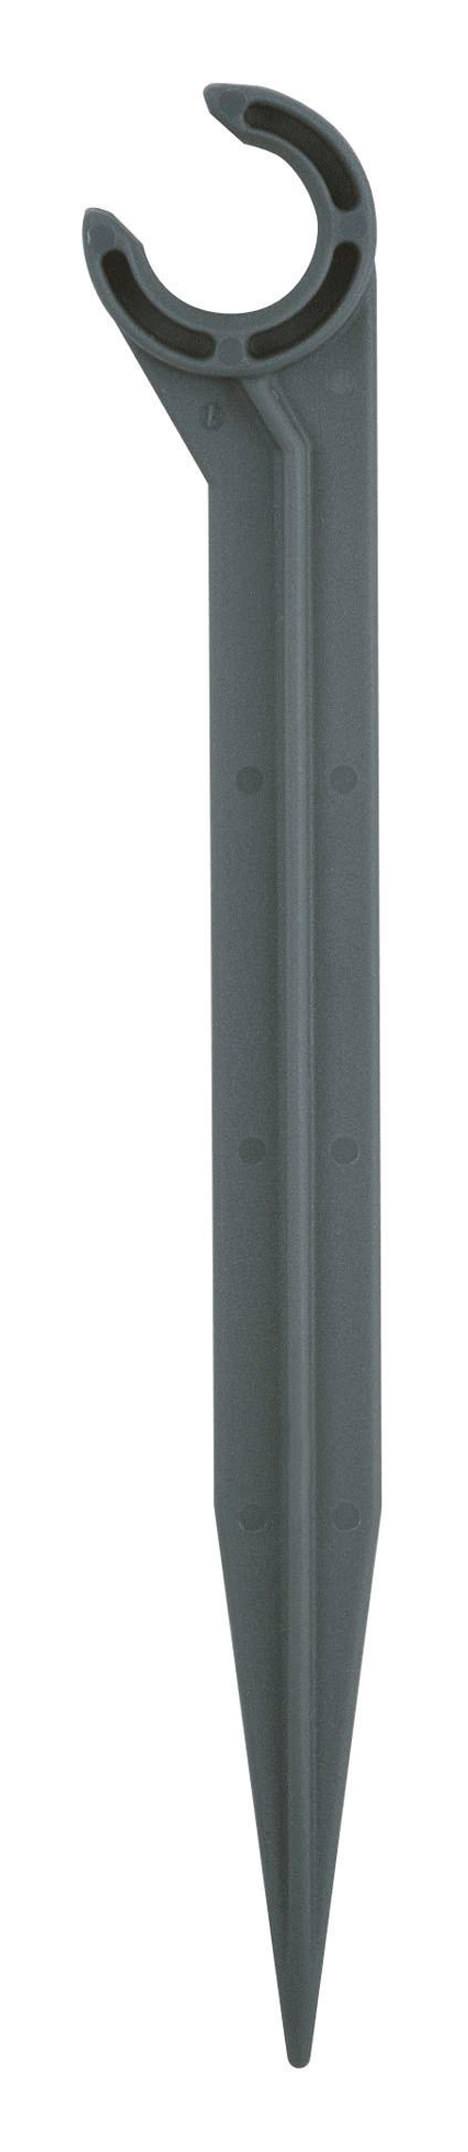 1327-20 4,6mm Halter GARDENA Micro Drip System Rohrhalter 3/16" Verteiler Art